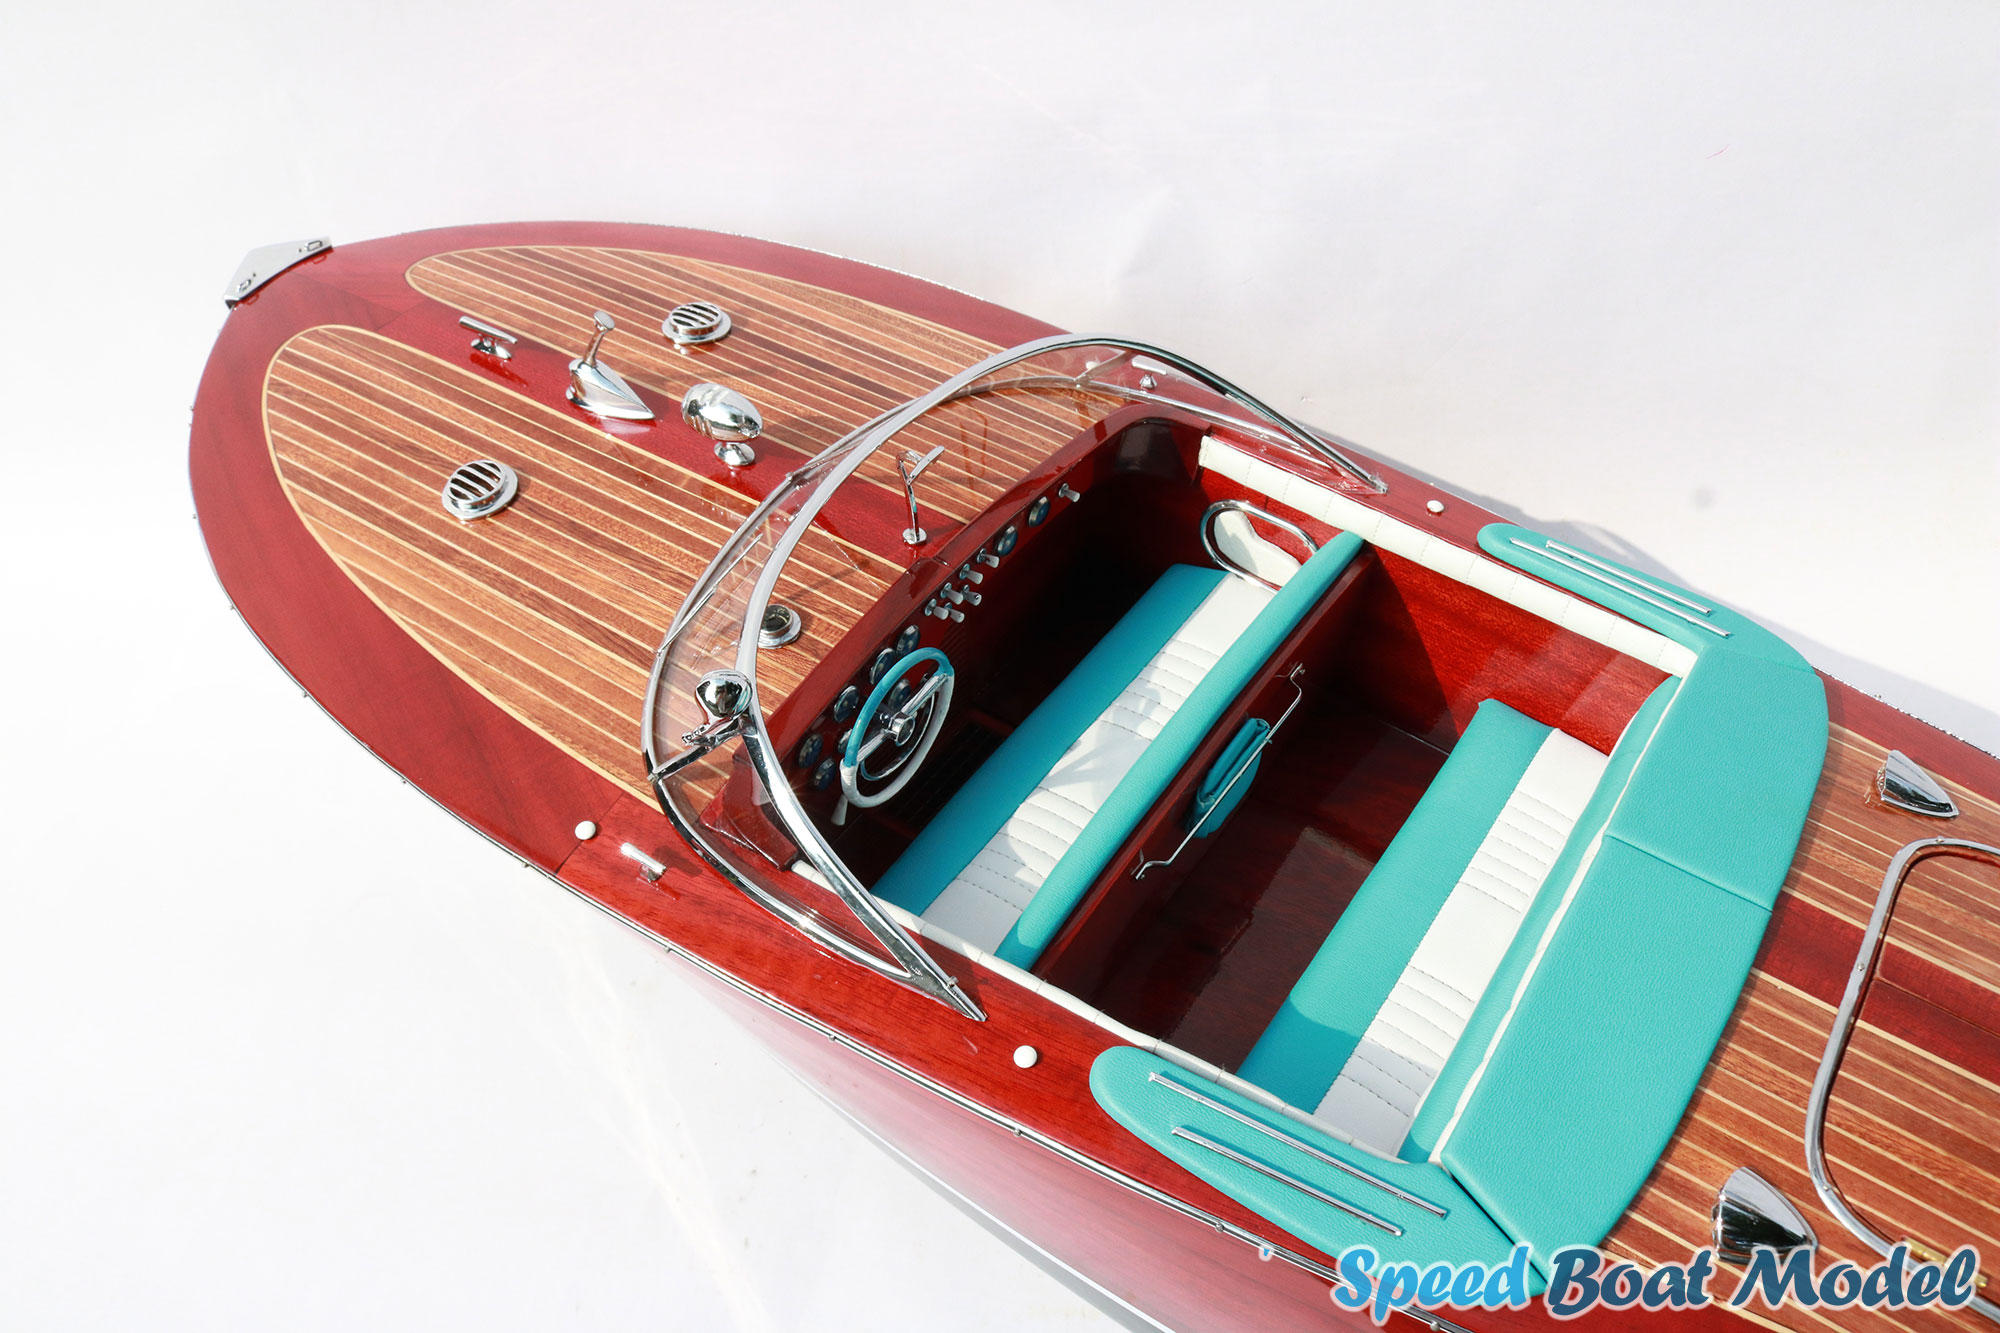 Super Riva Tritone Classic Speed Boat Model 34.2